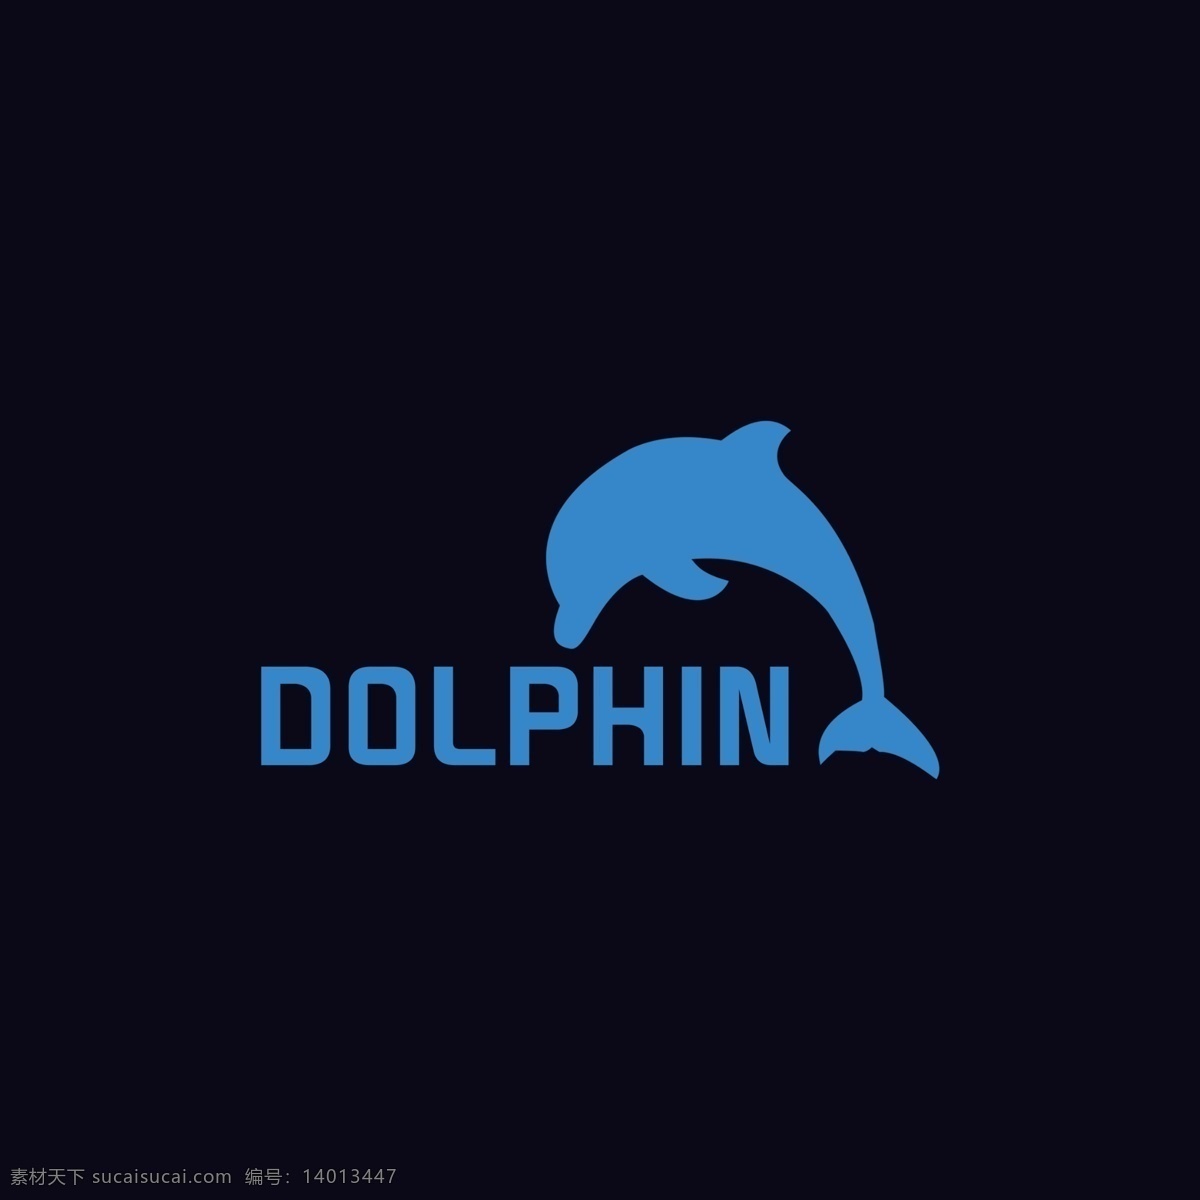 海豚 logo logo设计 元素设计 平面设计 简单 设计logo dolphin 高大上设计 简洁